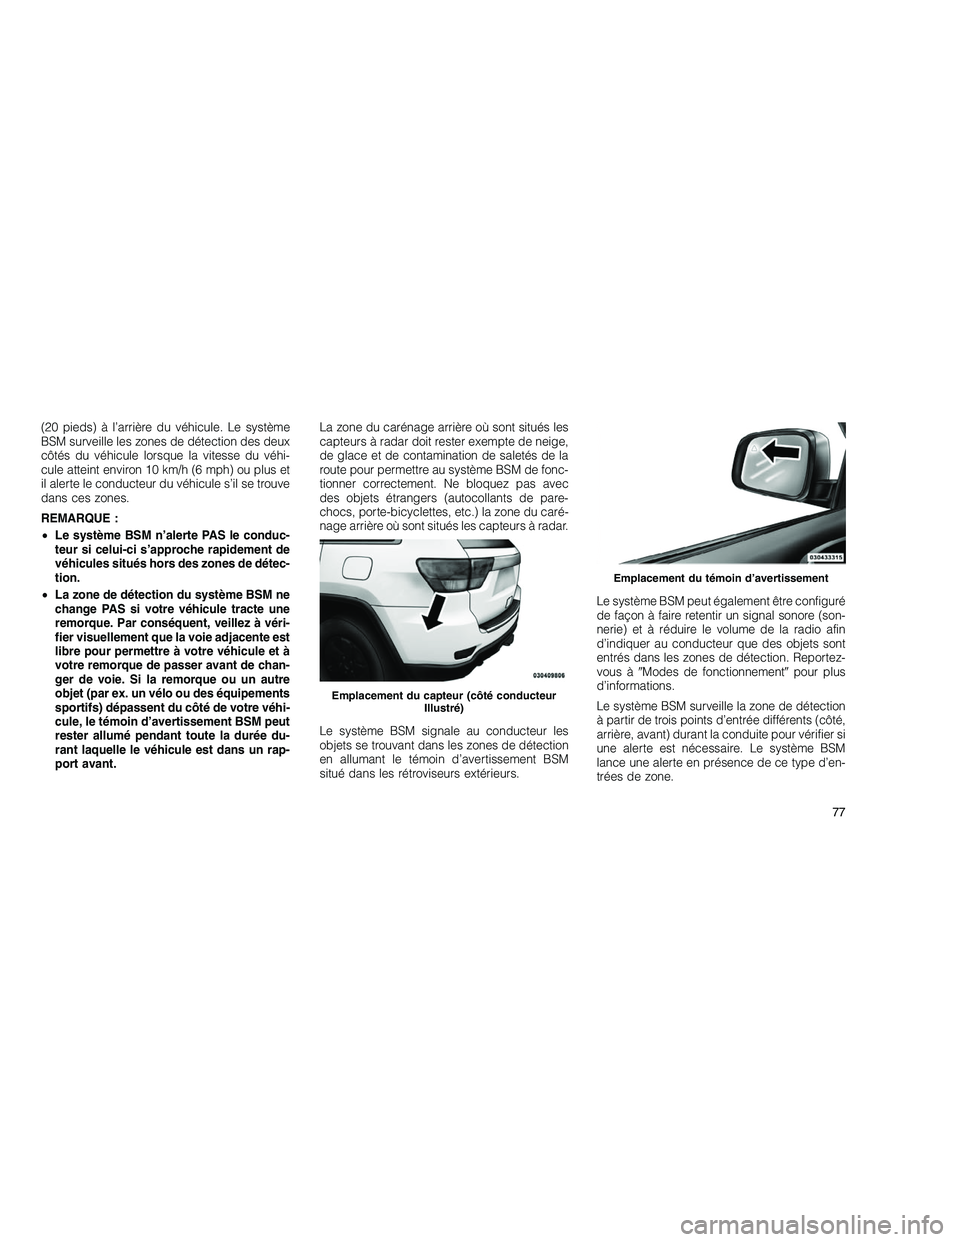 JEEP GRAND CHEROKEE 2011  Notice dentretien (in French) 
(20 pieds) à l’arrière du véhicule. Le système
BSM surveille les zones de détection des deux
côtés du véhicule lorsque la vitesse du véhi-
cule atteint environ 10 km/h (6 mph) ou plus et
i